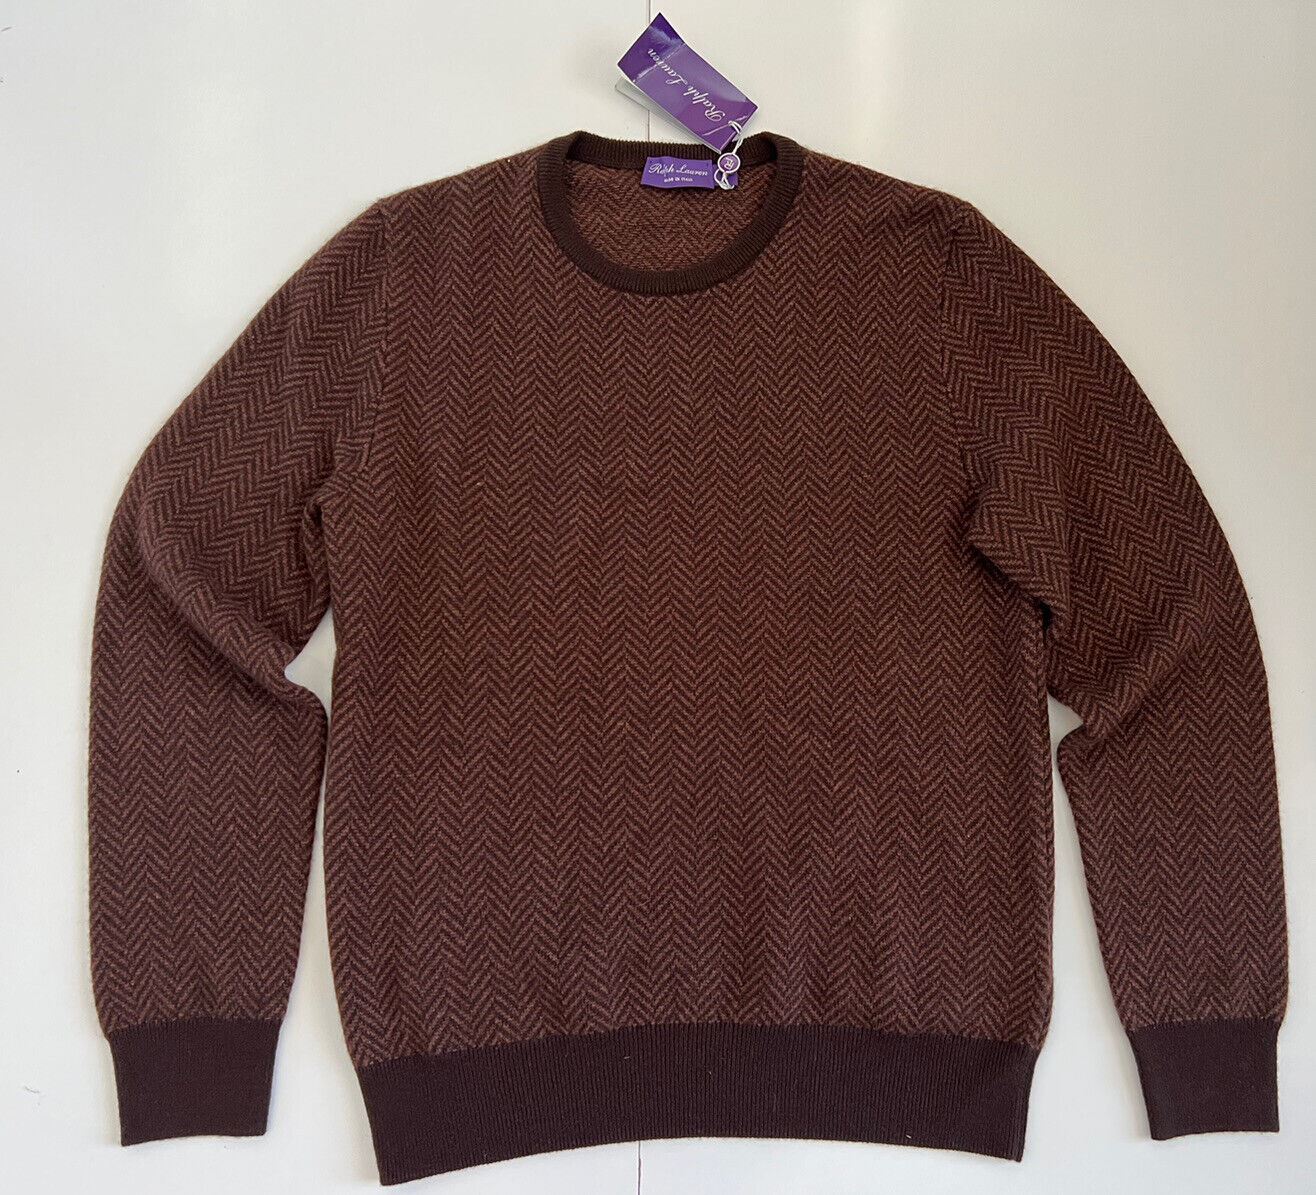 Neu mit Etikett: 1495 $ Ralph Lauren Purple Label Kaschmirbrauner Pullover XL Hergestellt in Italien